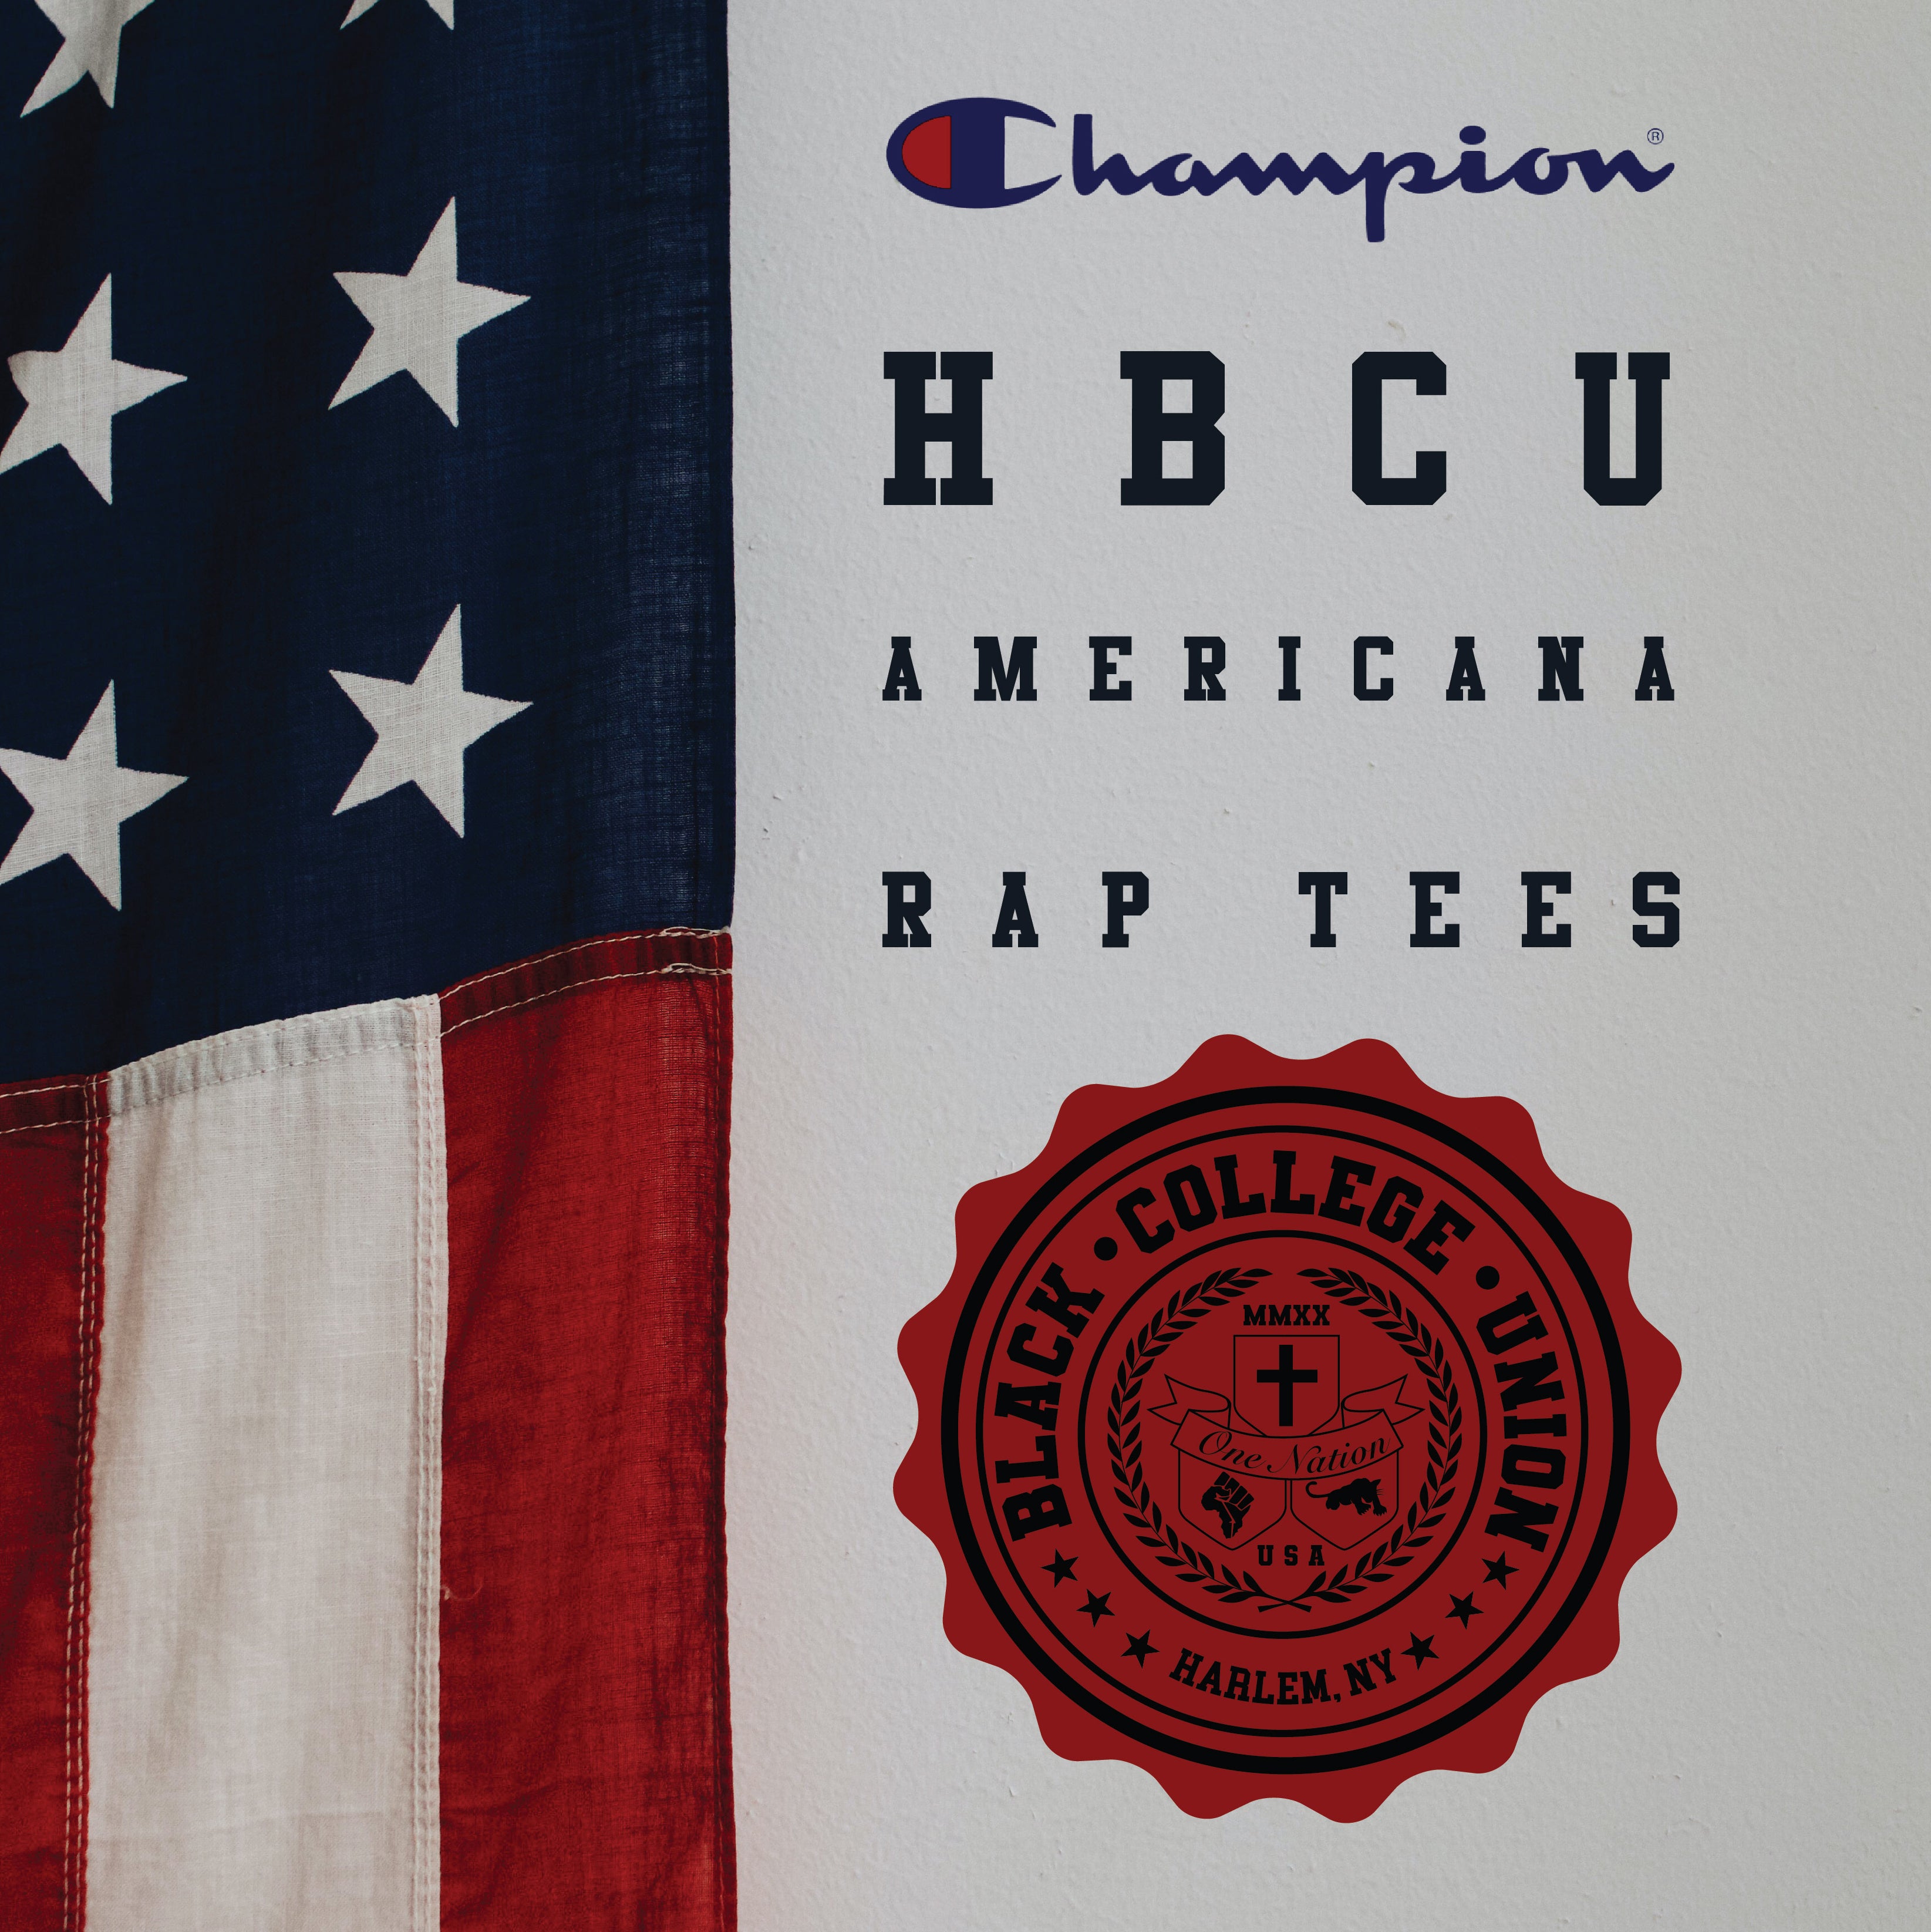 BCU X Champion Original HBCU Americana Rap Tee - Southern [SU]